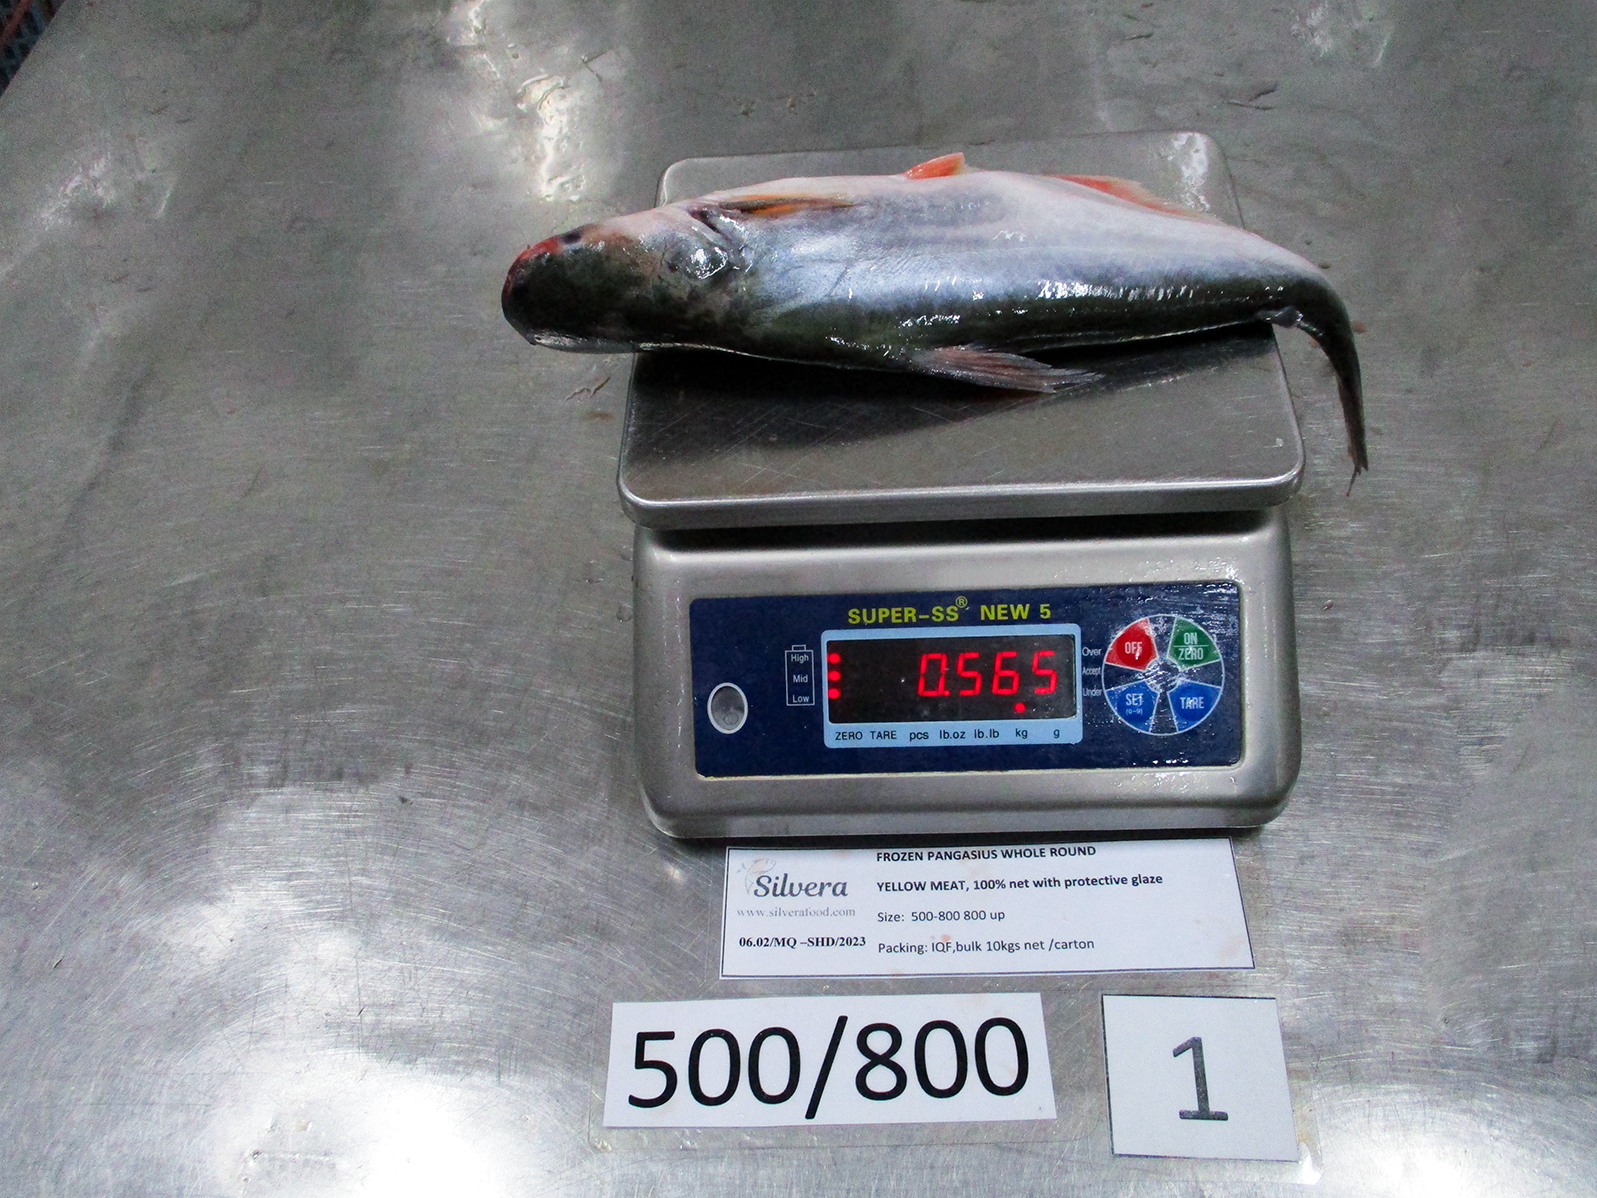 Whole round pangasius fish 500-800g